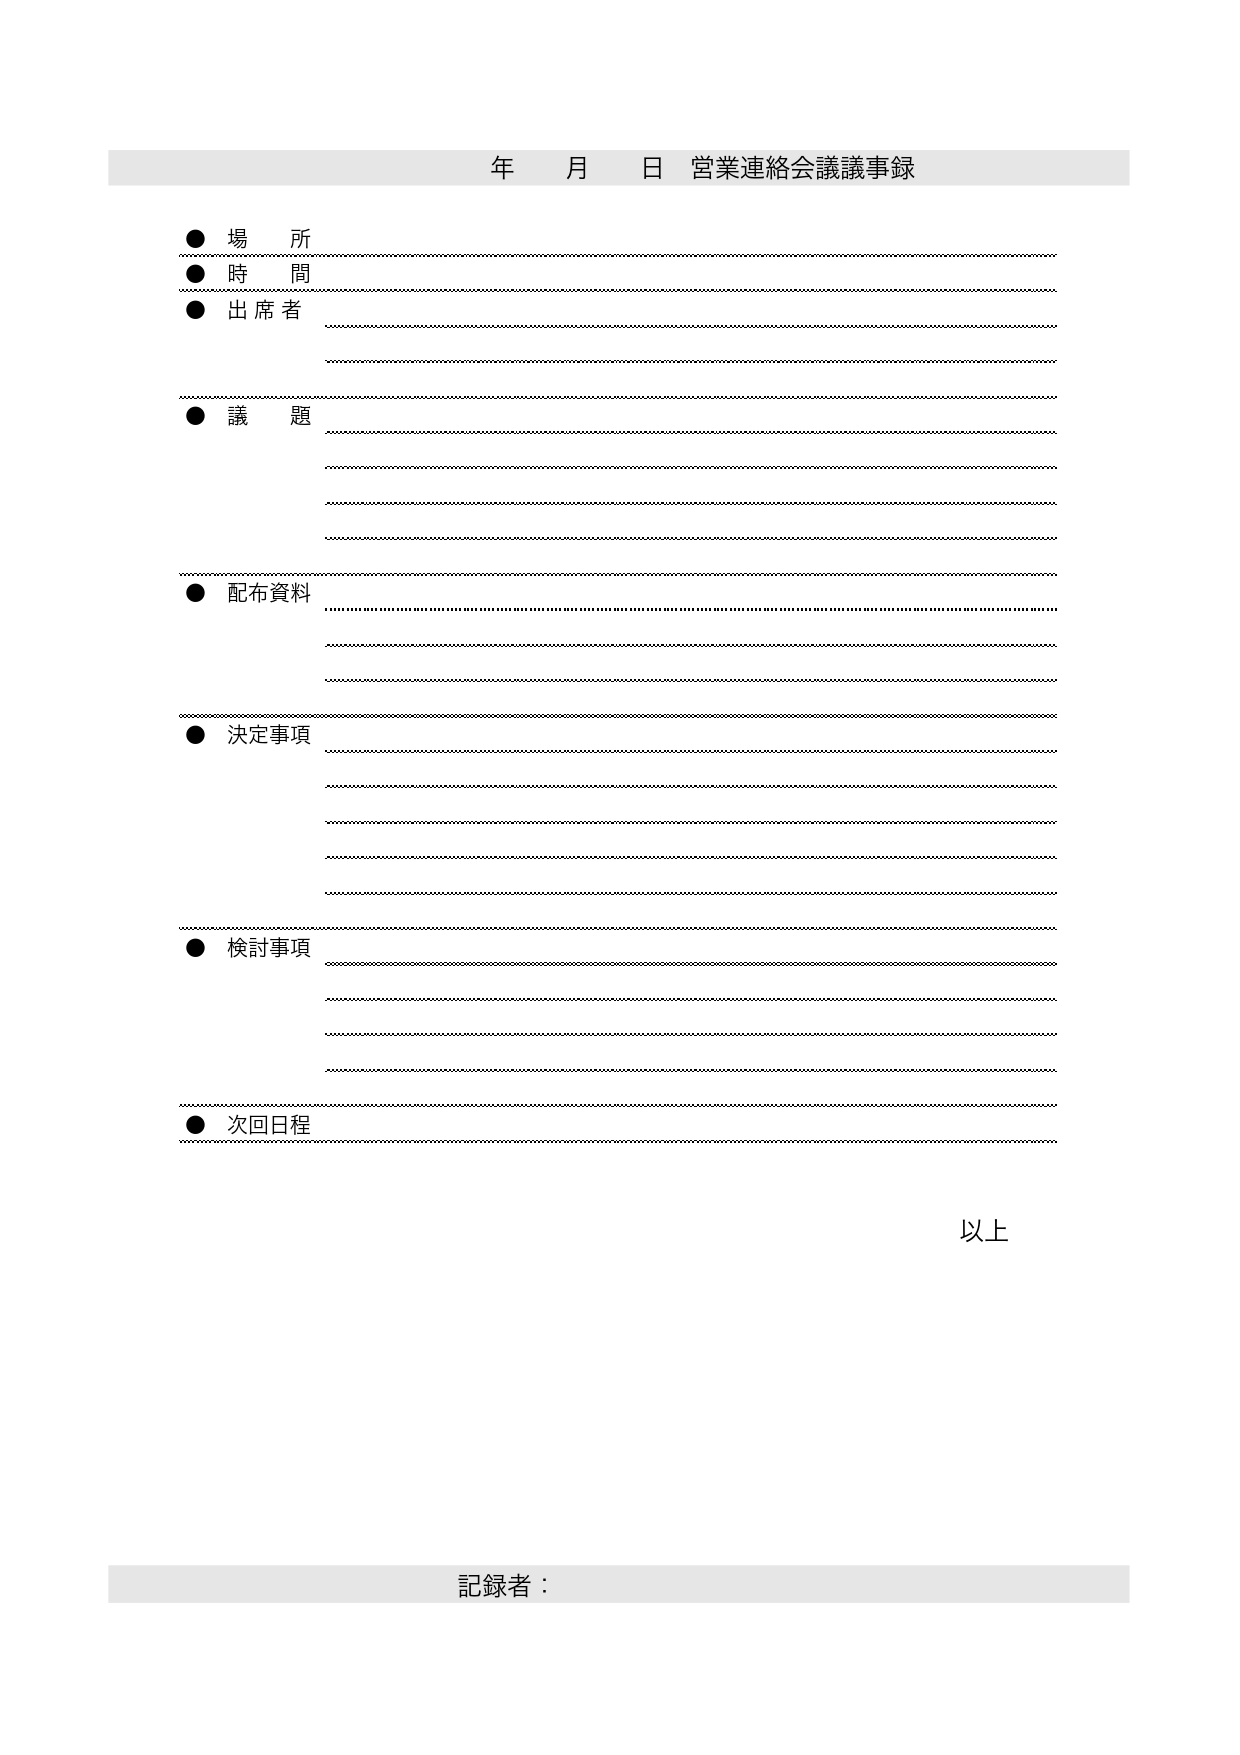 打ち合わせや会議に使えるシンプルな議事録のフォーマット「word・Excel・PDF」のテンプレートを無料でダウンロード